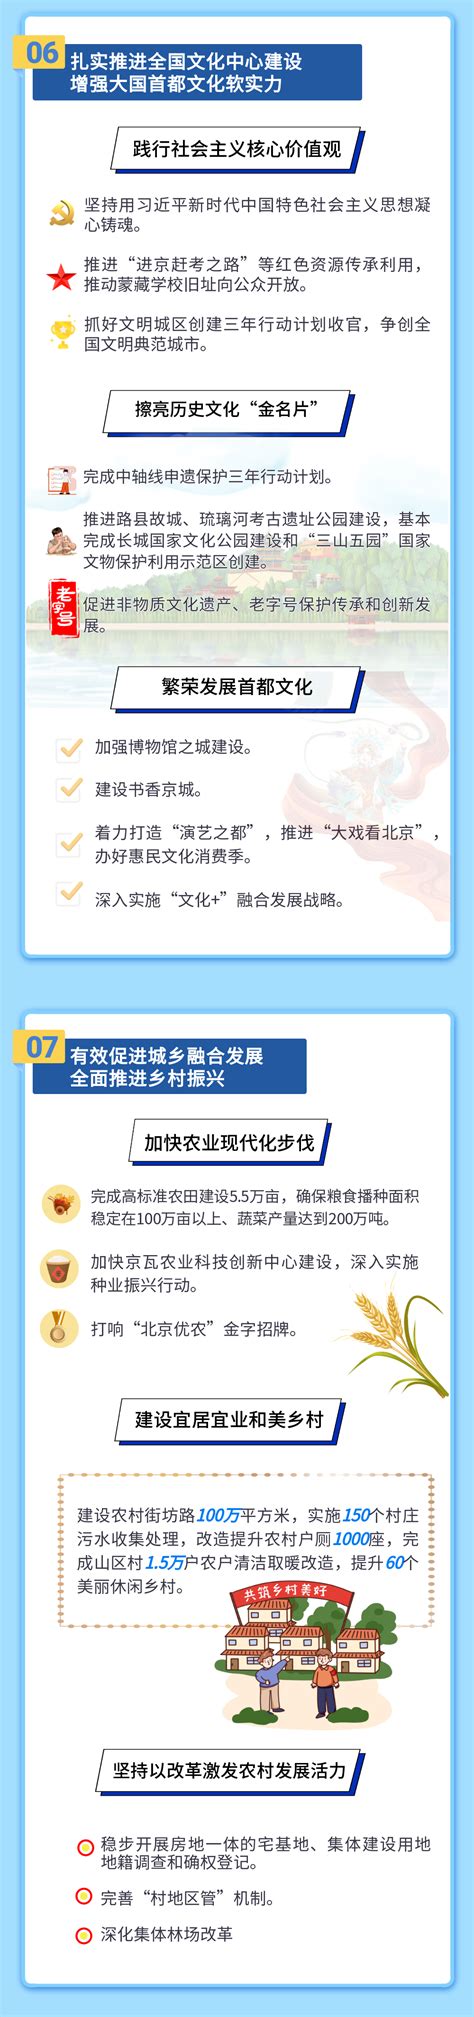 图 解-连云港市2021年政府工作报告（中日对照）